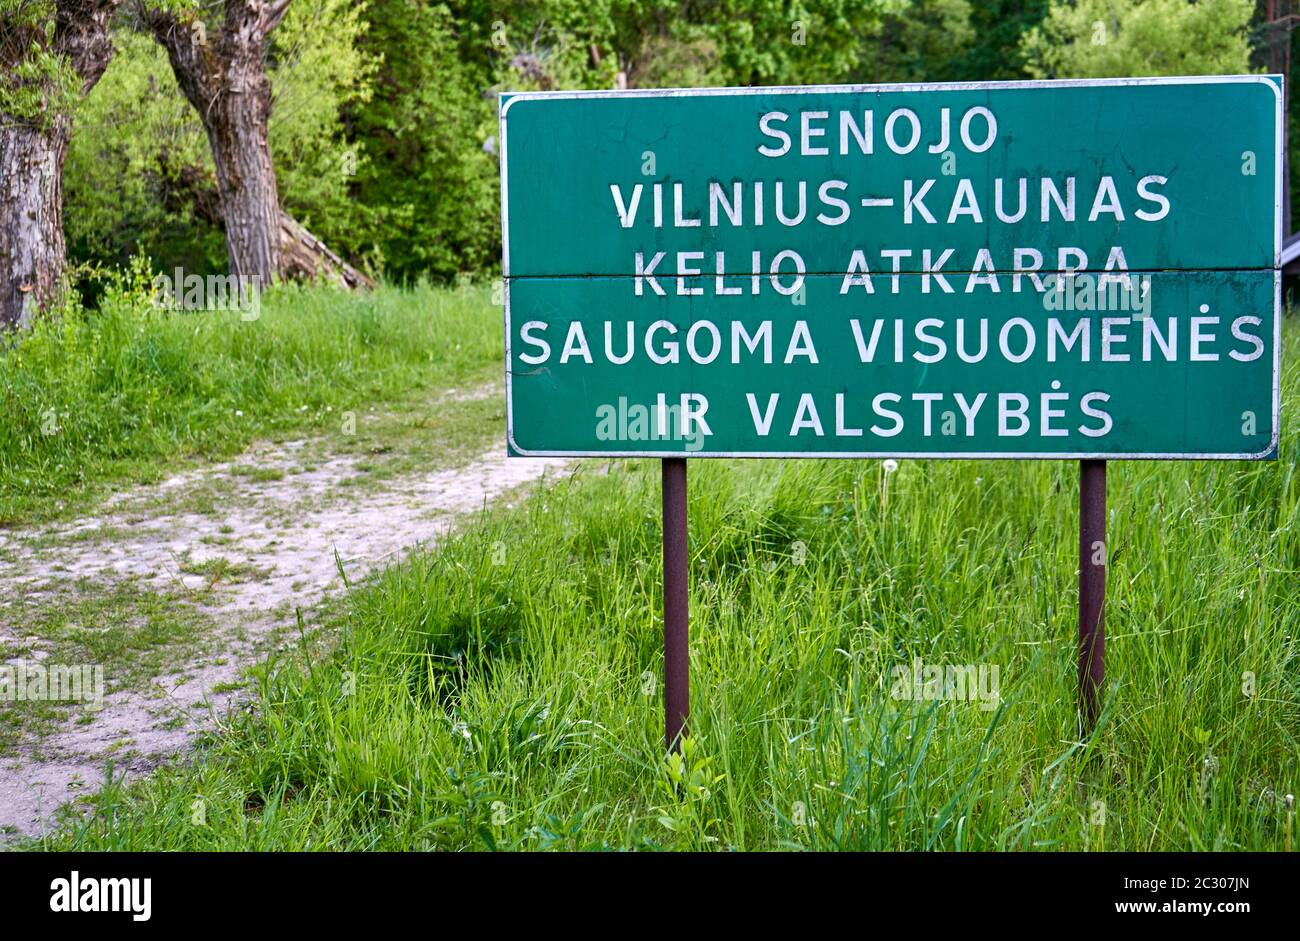 Huge sign near the old road in Vilnius. 'Senojo Vilnius - Kaunas kelio atkarpa saugoma visuomenės ir valstybės' Stock Photo